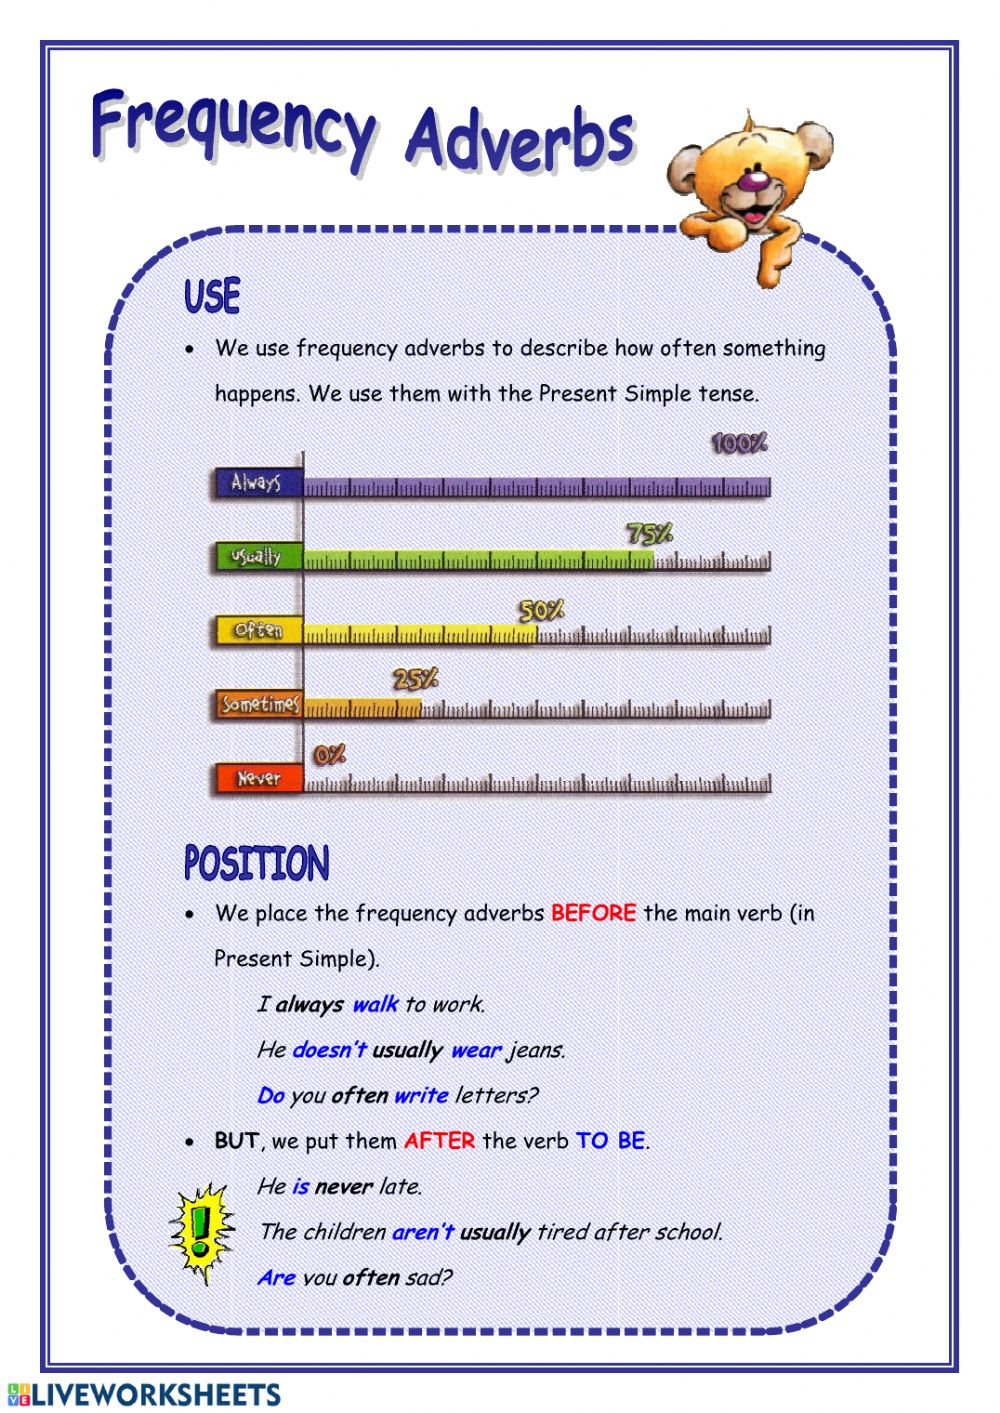 adverb-phrase-worksheets-pdf-adverbworksheets